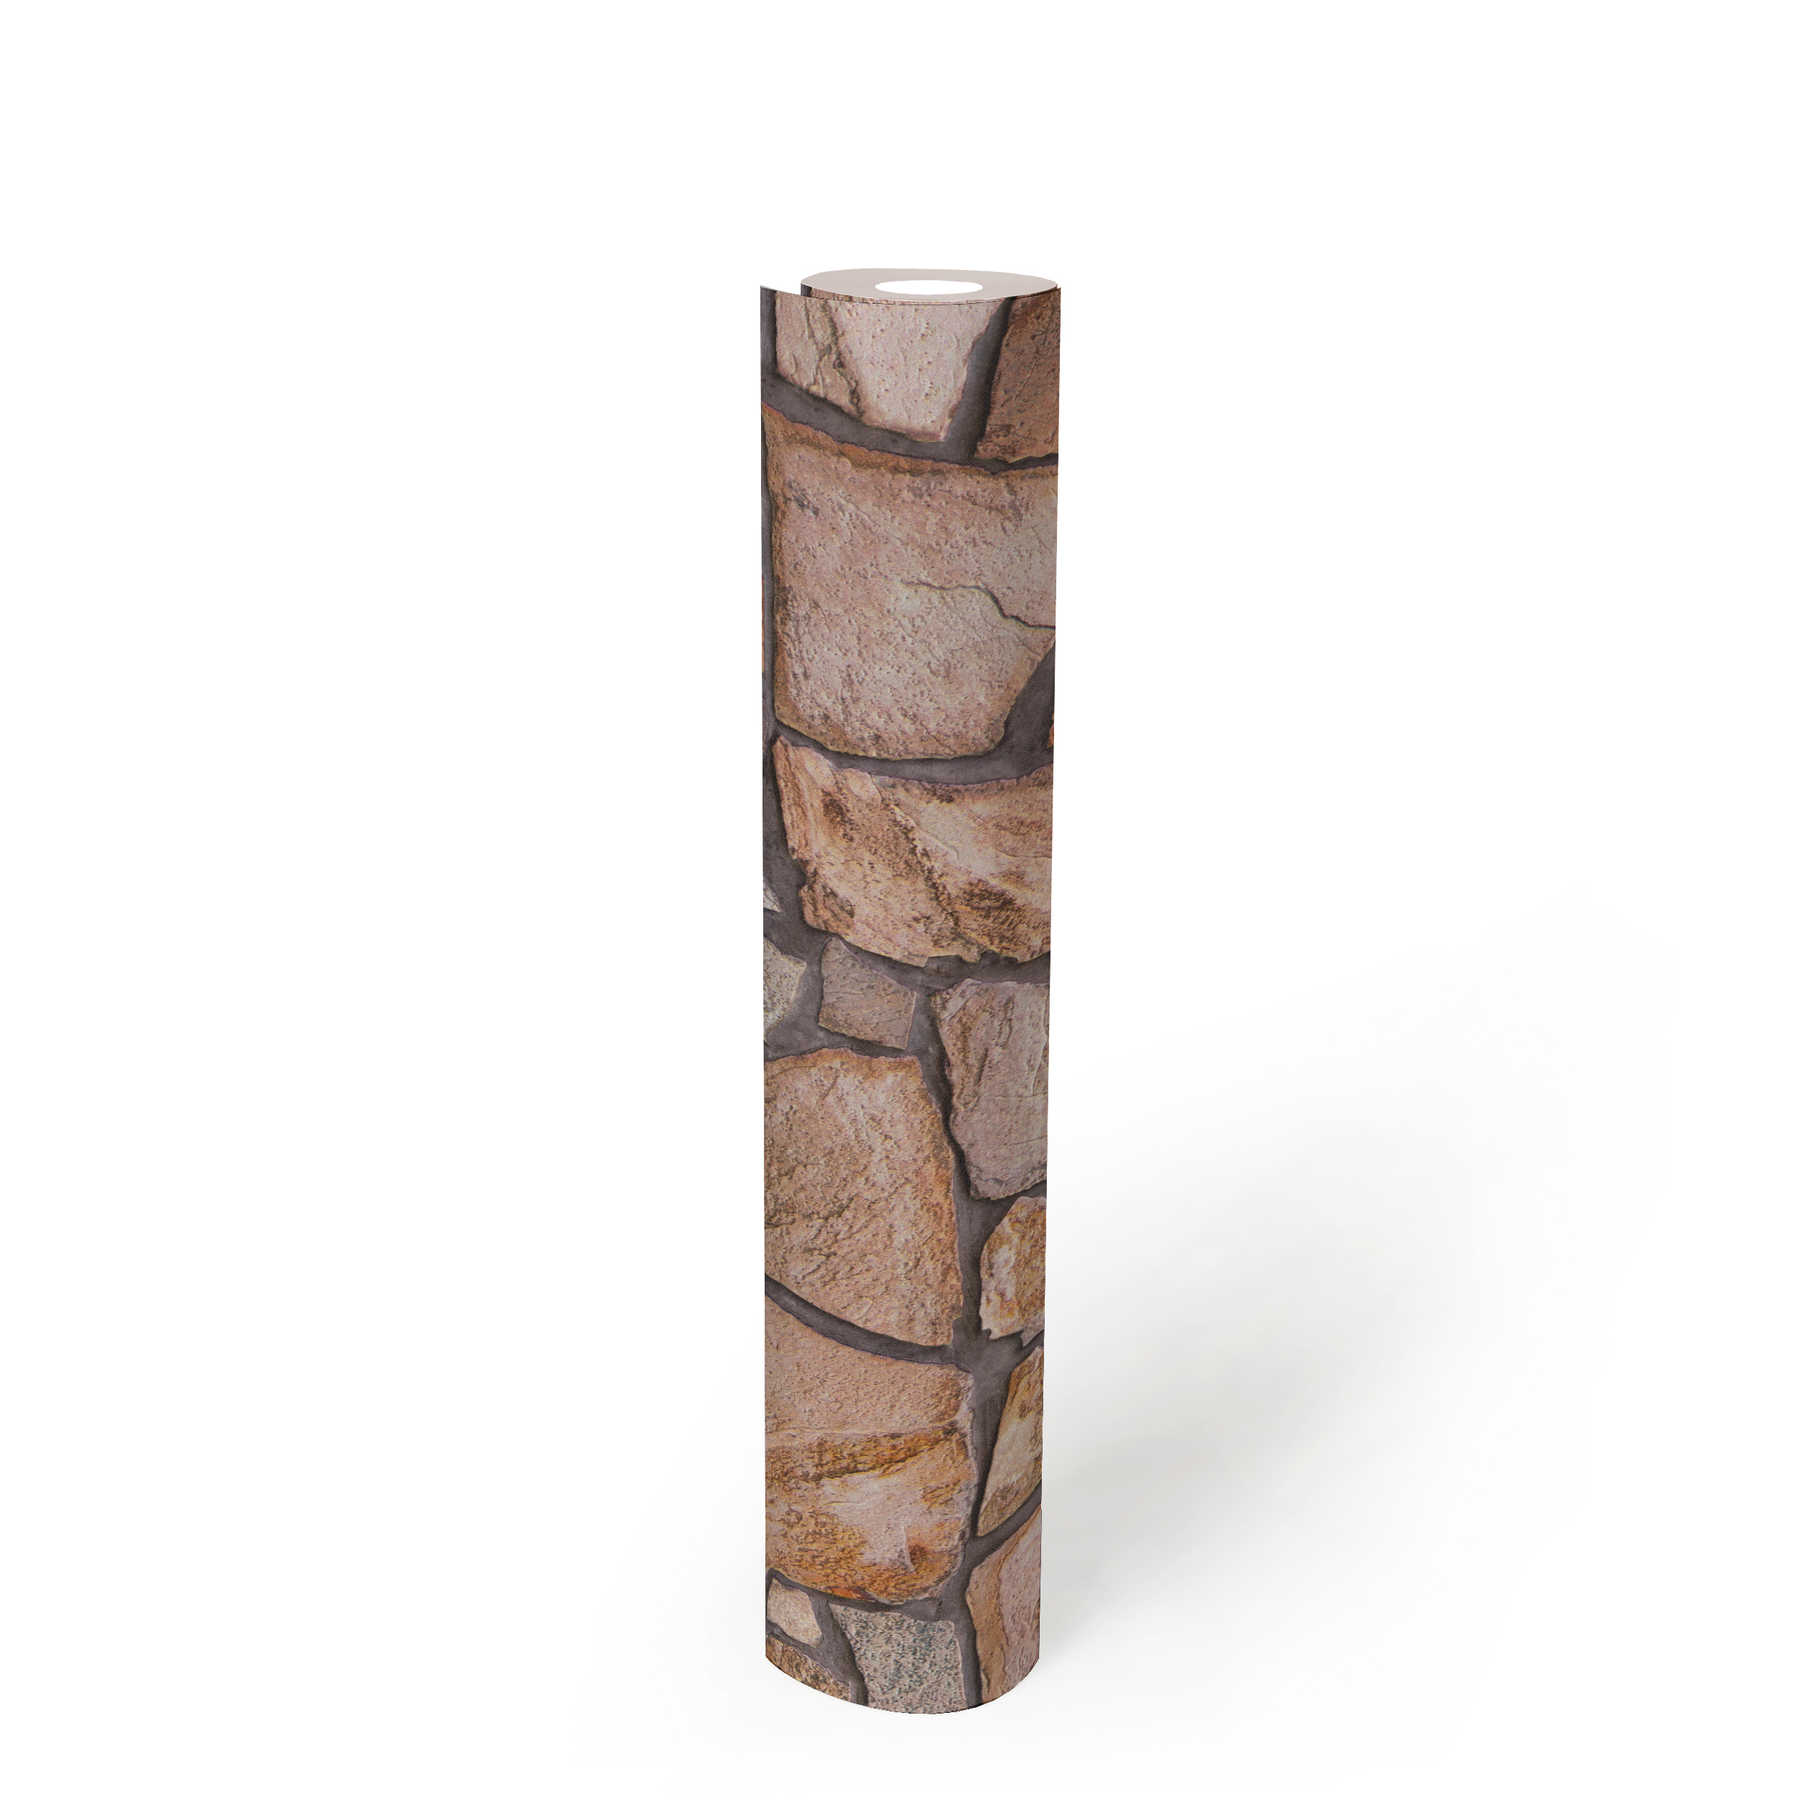             Papel pintado 3d piedra natural detallado y rústico - marrón, beige, gris
        